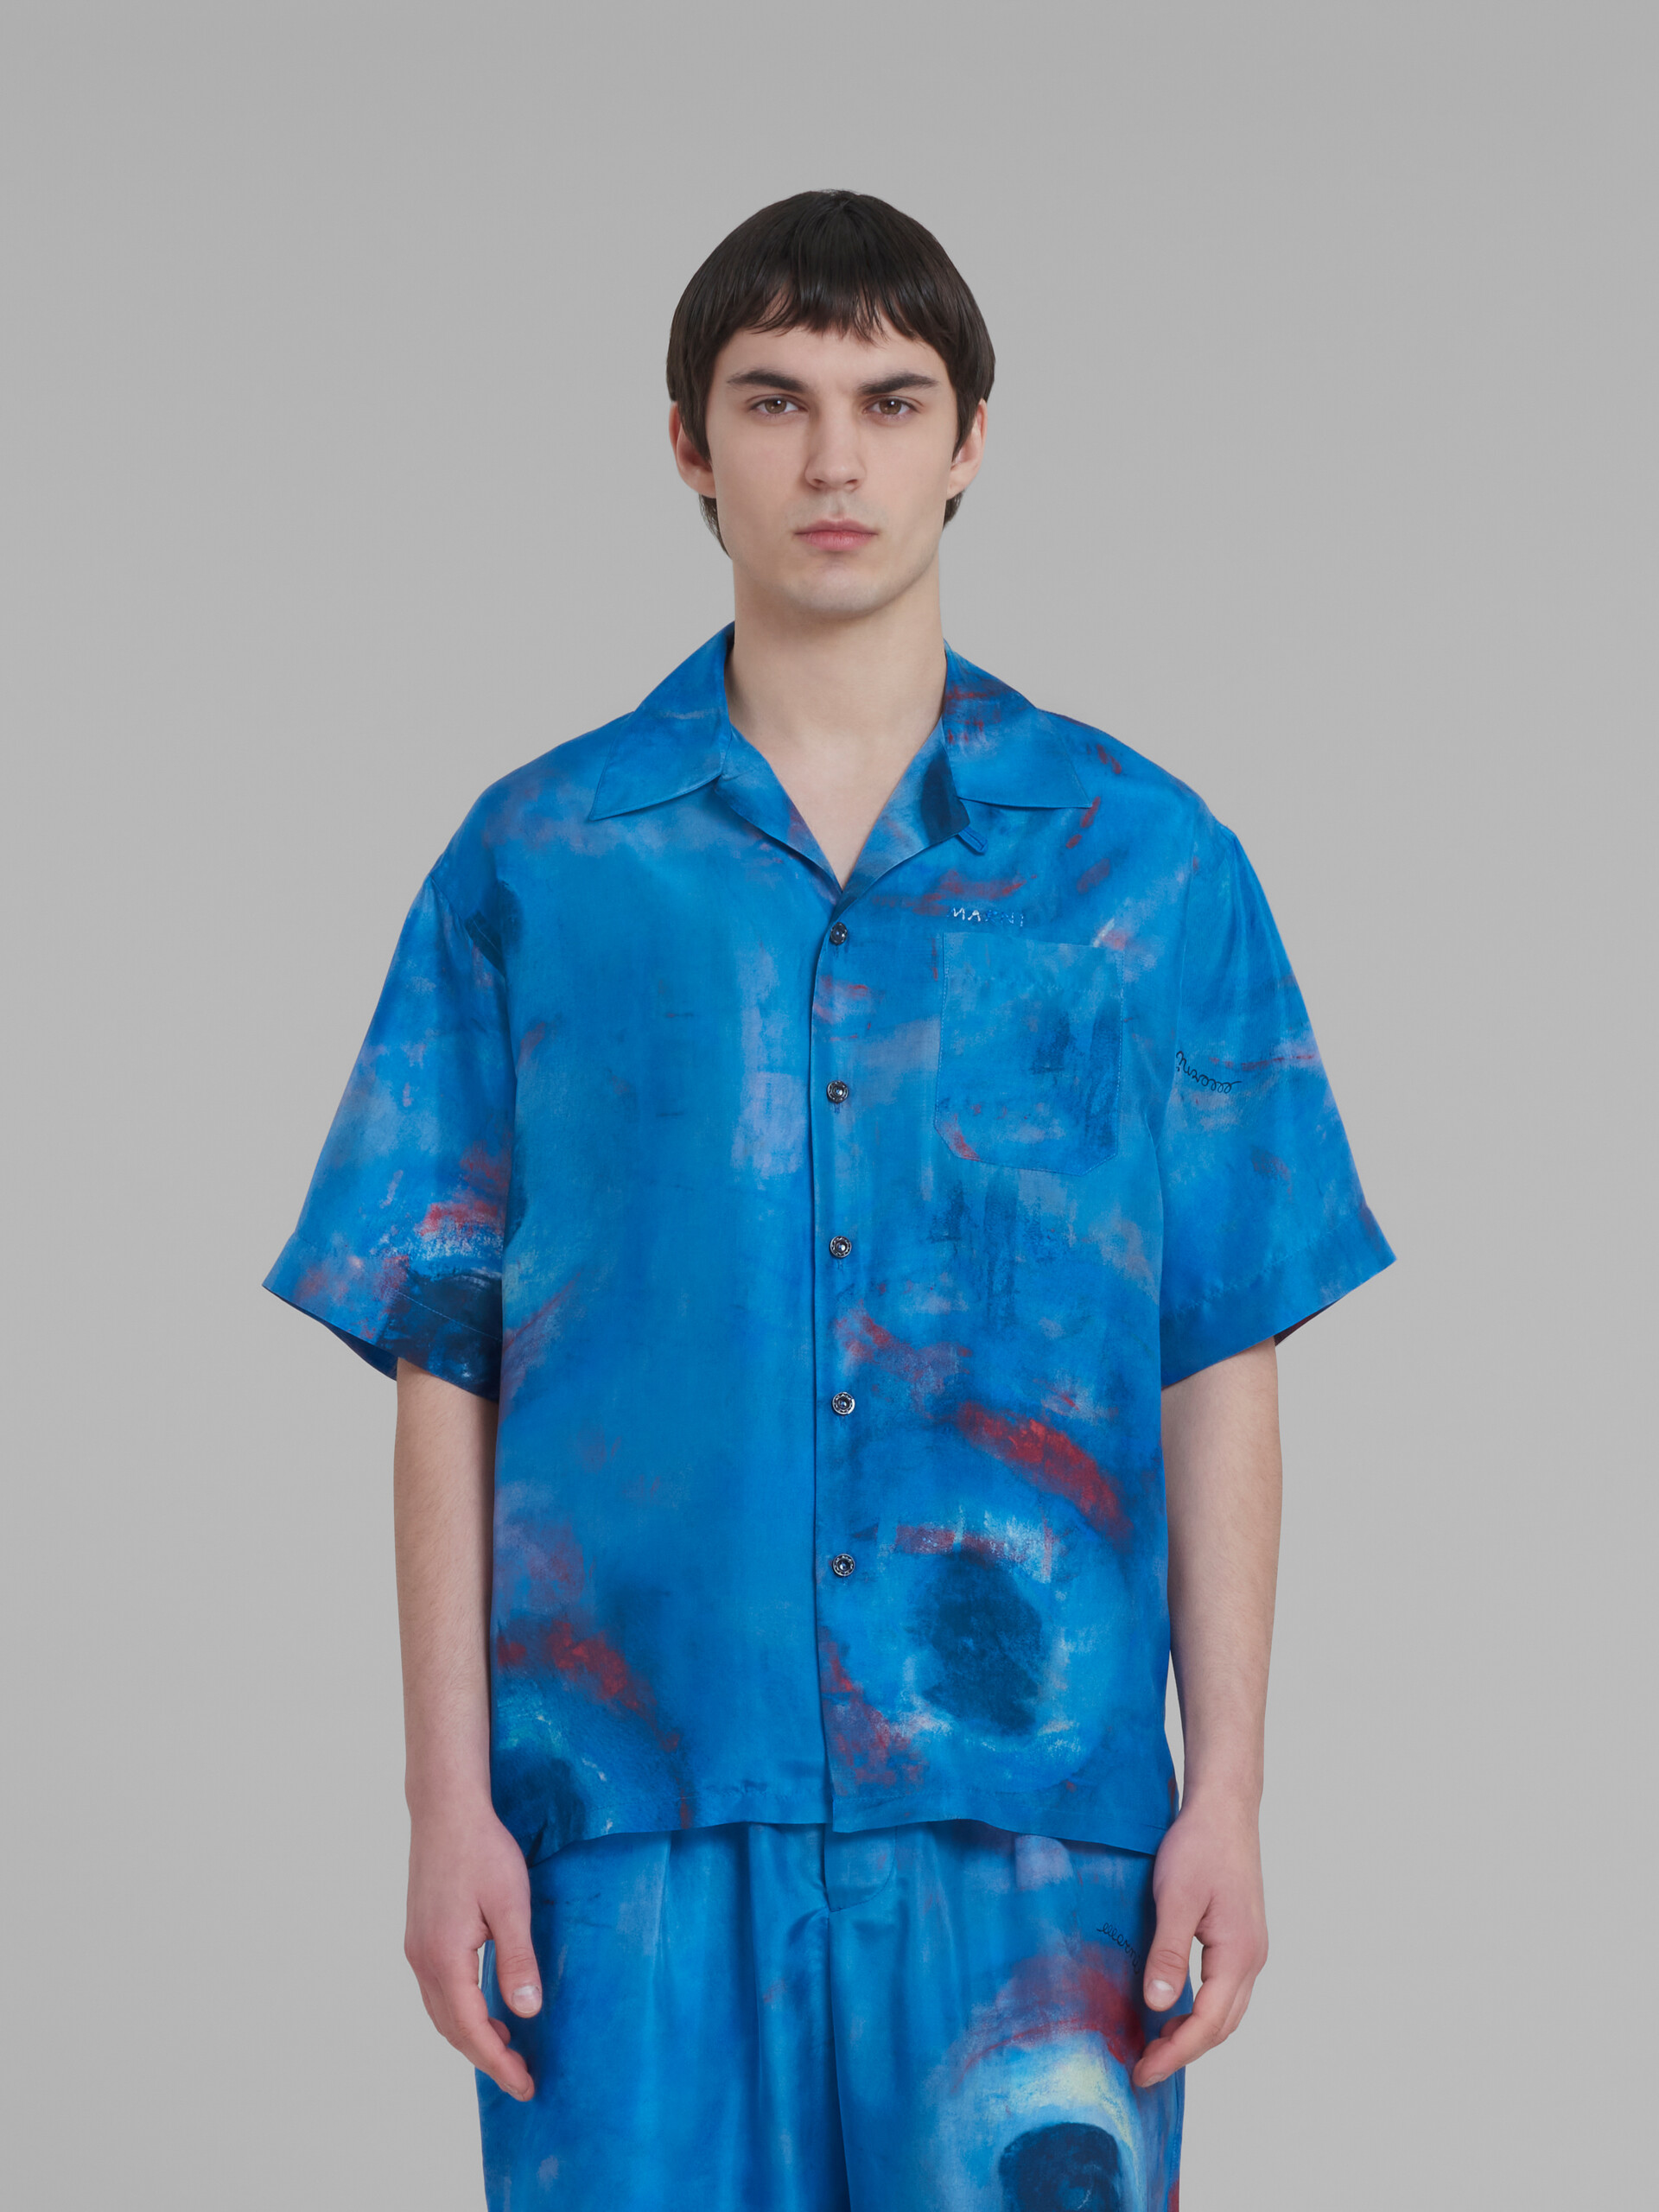 Bowling shirt with Buchi Blu print - Shirts - Image 2